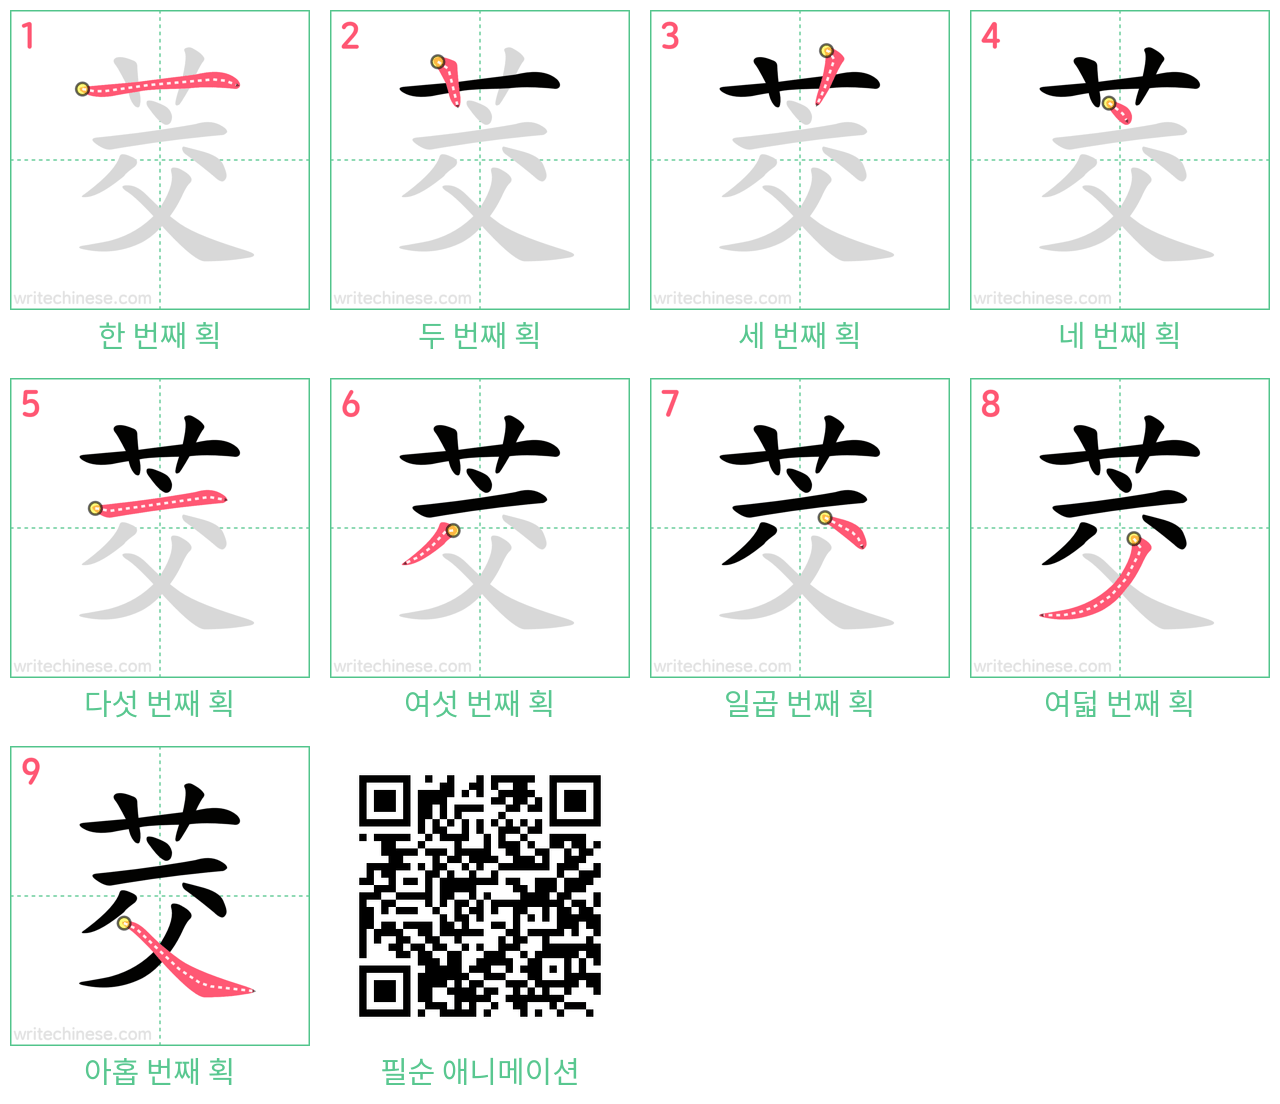 茭 step-by-step stroke order diagrams